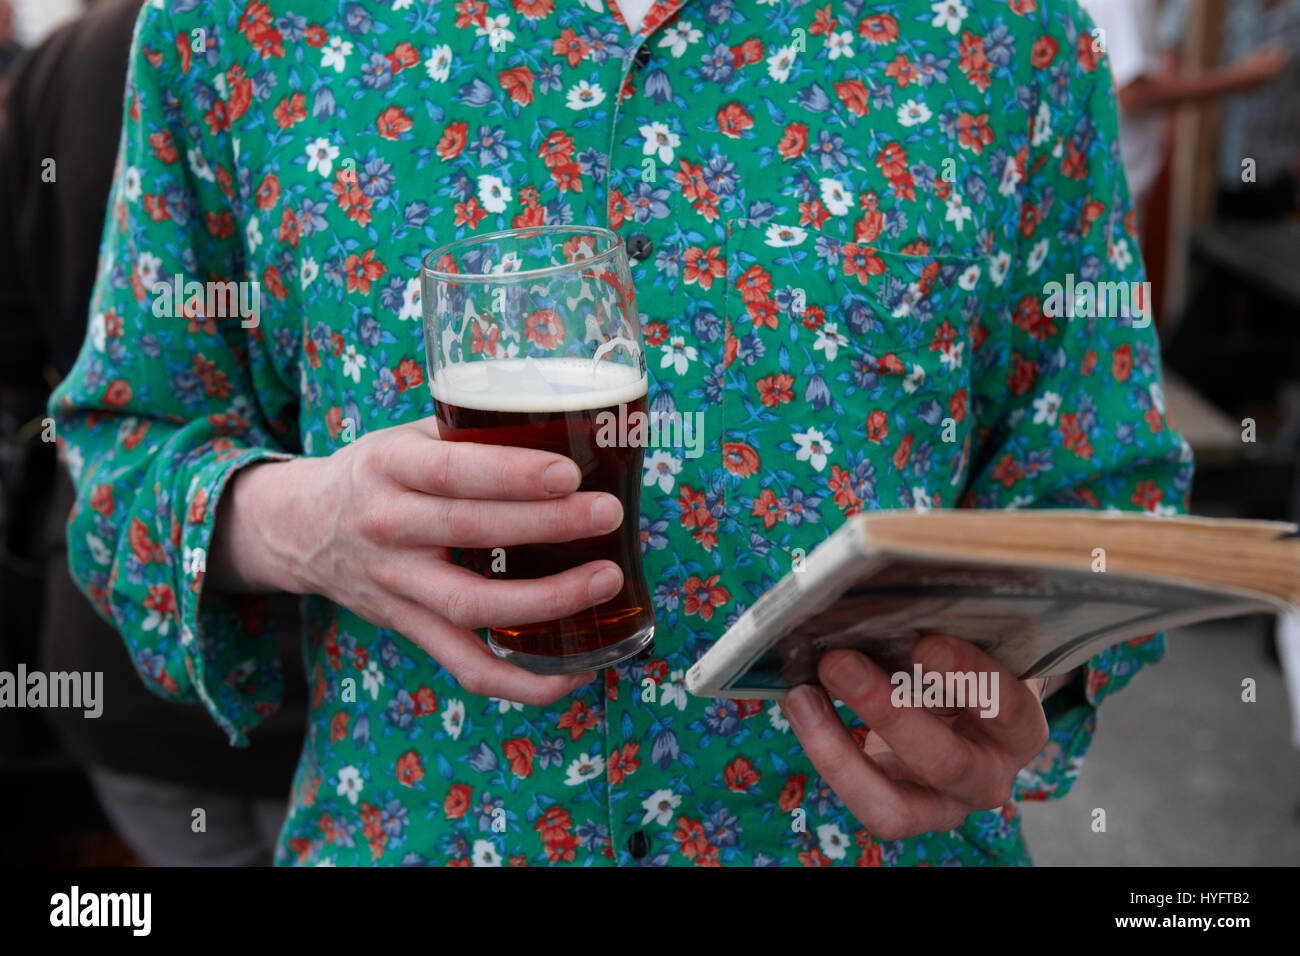 Un homme portant un haut fleuri vert la lecture d'un livre, la tenue d'une pinte au Festival littéraire, Carmarthen, pays de Galles, Royaume-Uni Banque D'Images